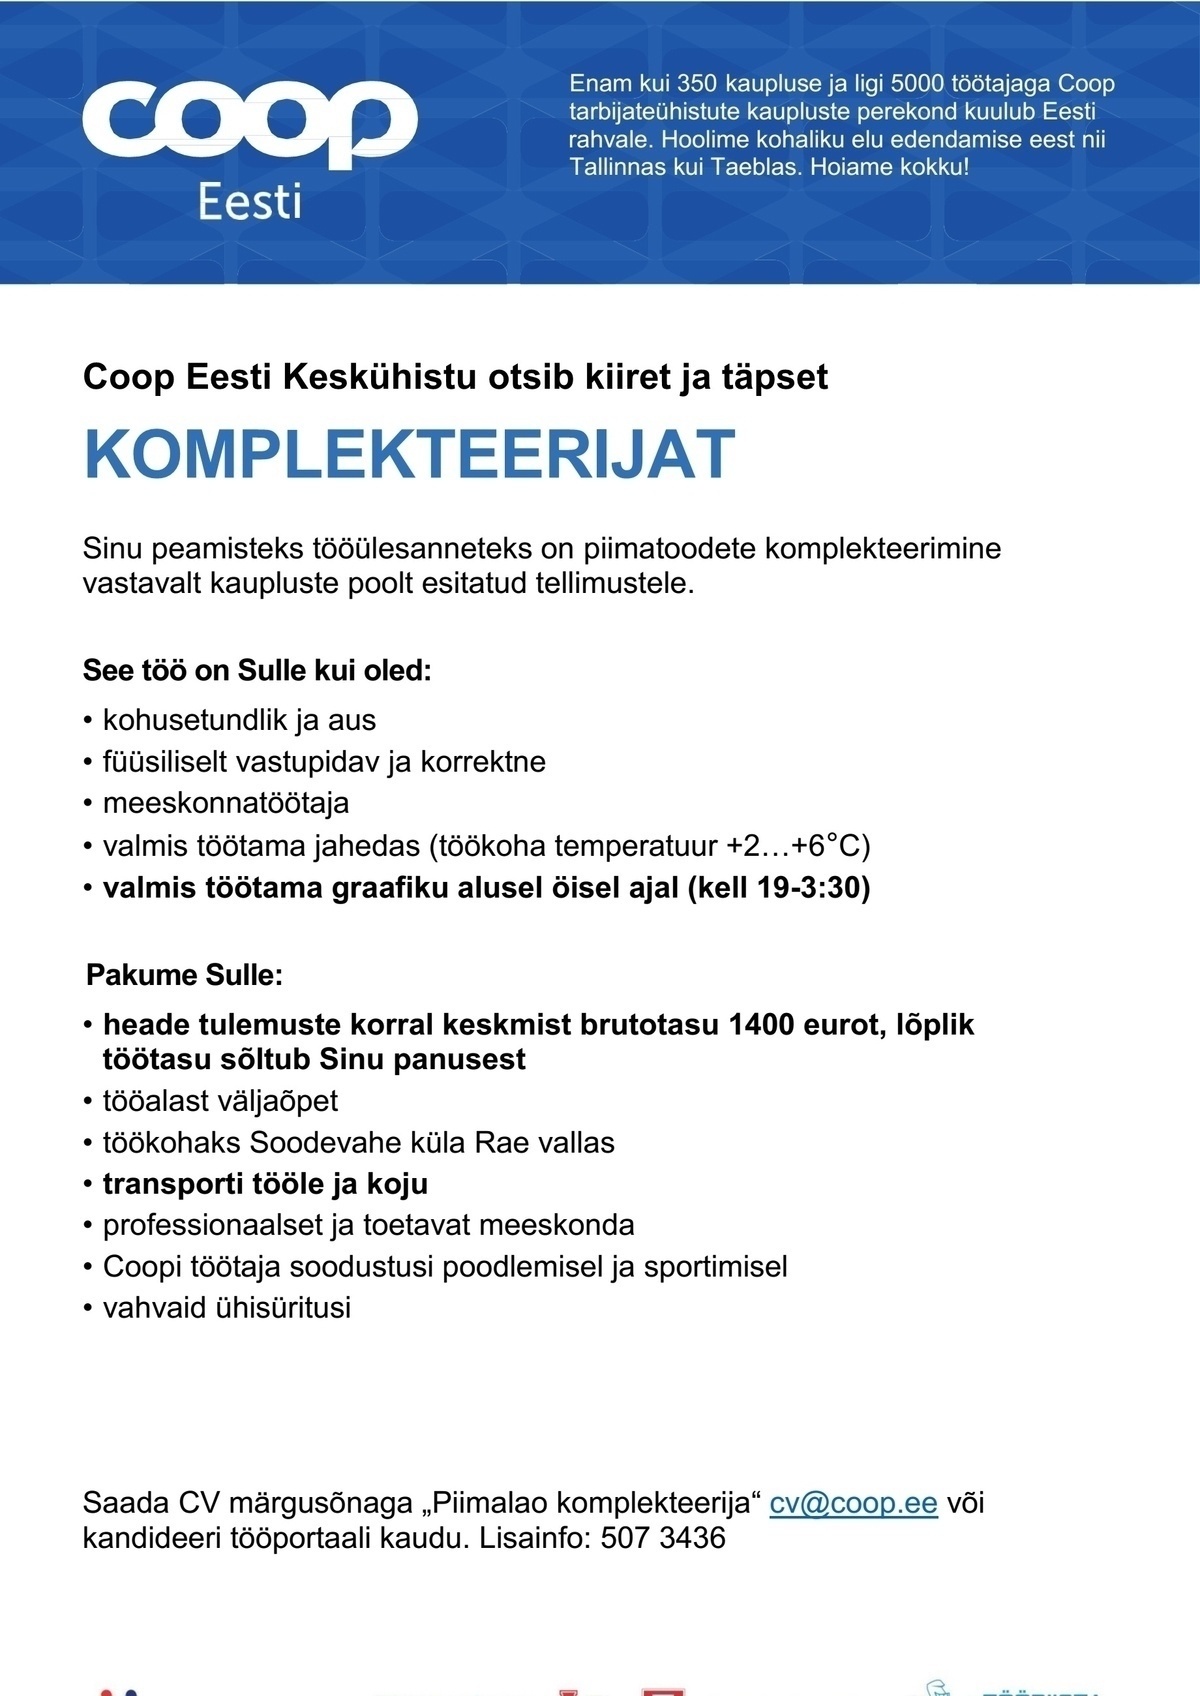 Coop Eesti Keskühistu Komplekteerija (piimaladu)